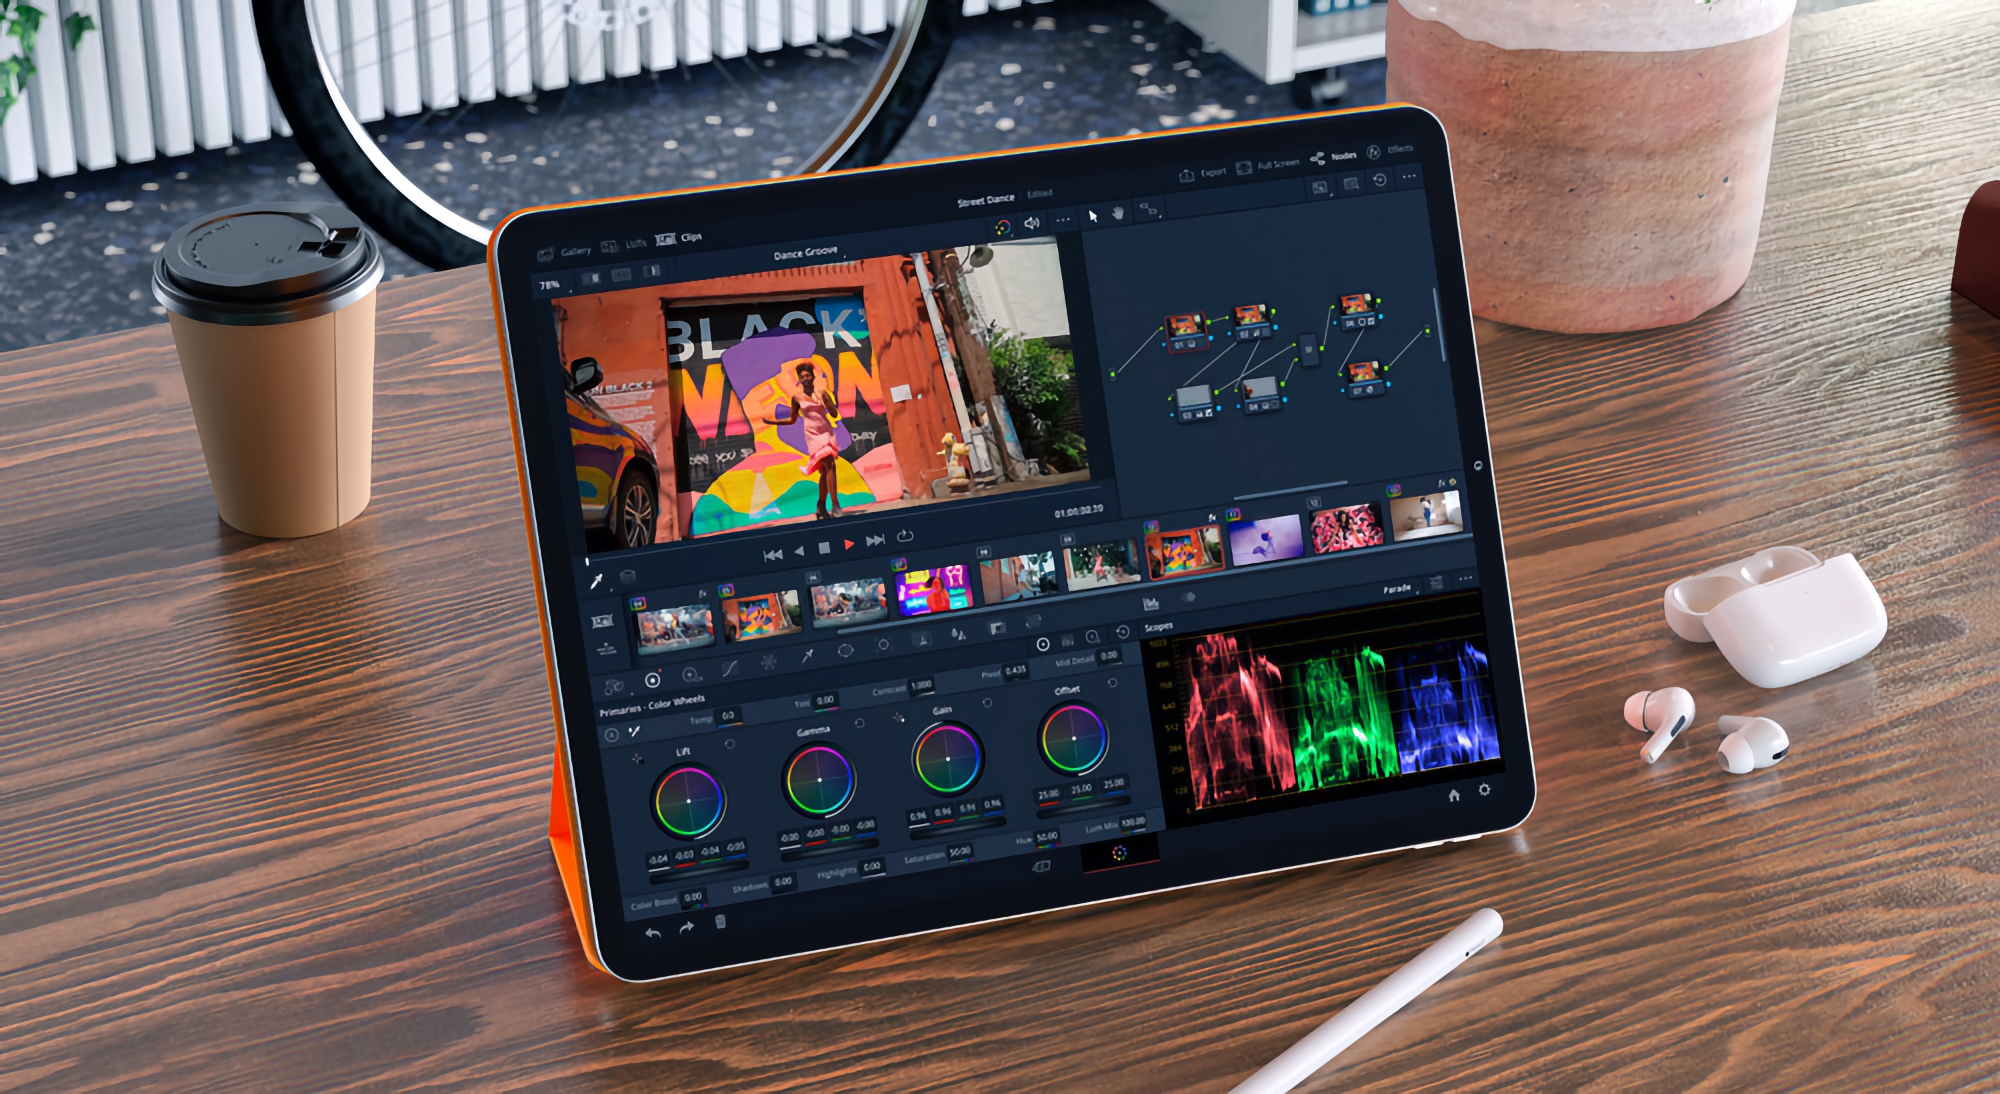 Blackmagic ogłasza DaVinci Resolve dla iPada: aplikację do edycji wideo i korekcji kolorów ze wsparciem dla Apple Pencil, Magic Keyboard, Smart Keyboard Folio i Magic Trackpad